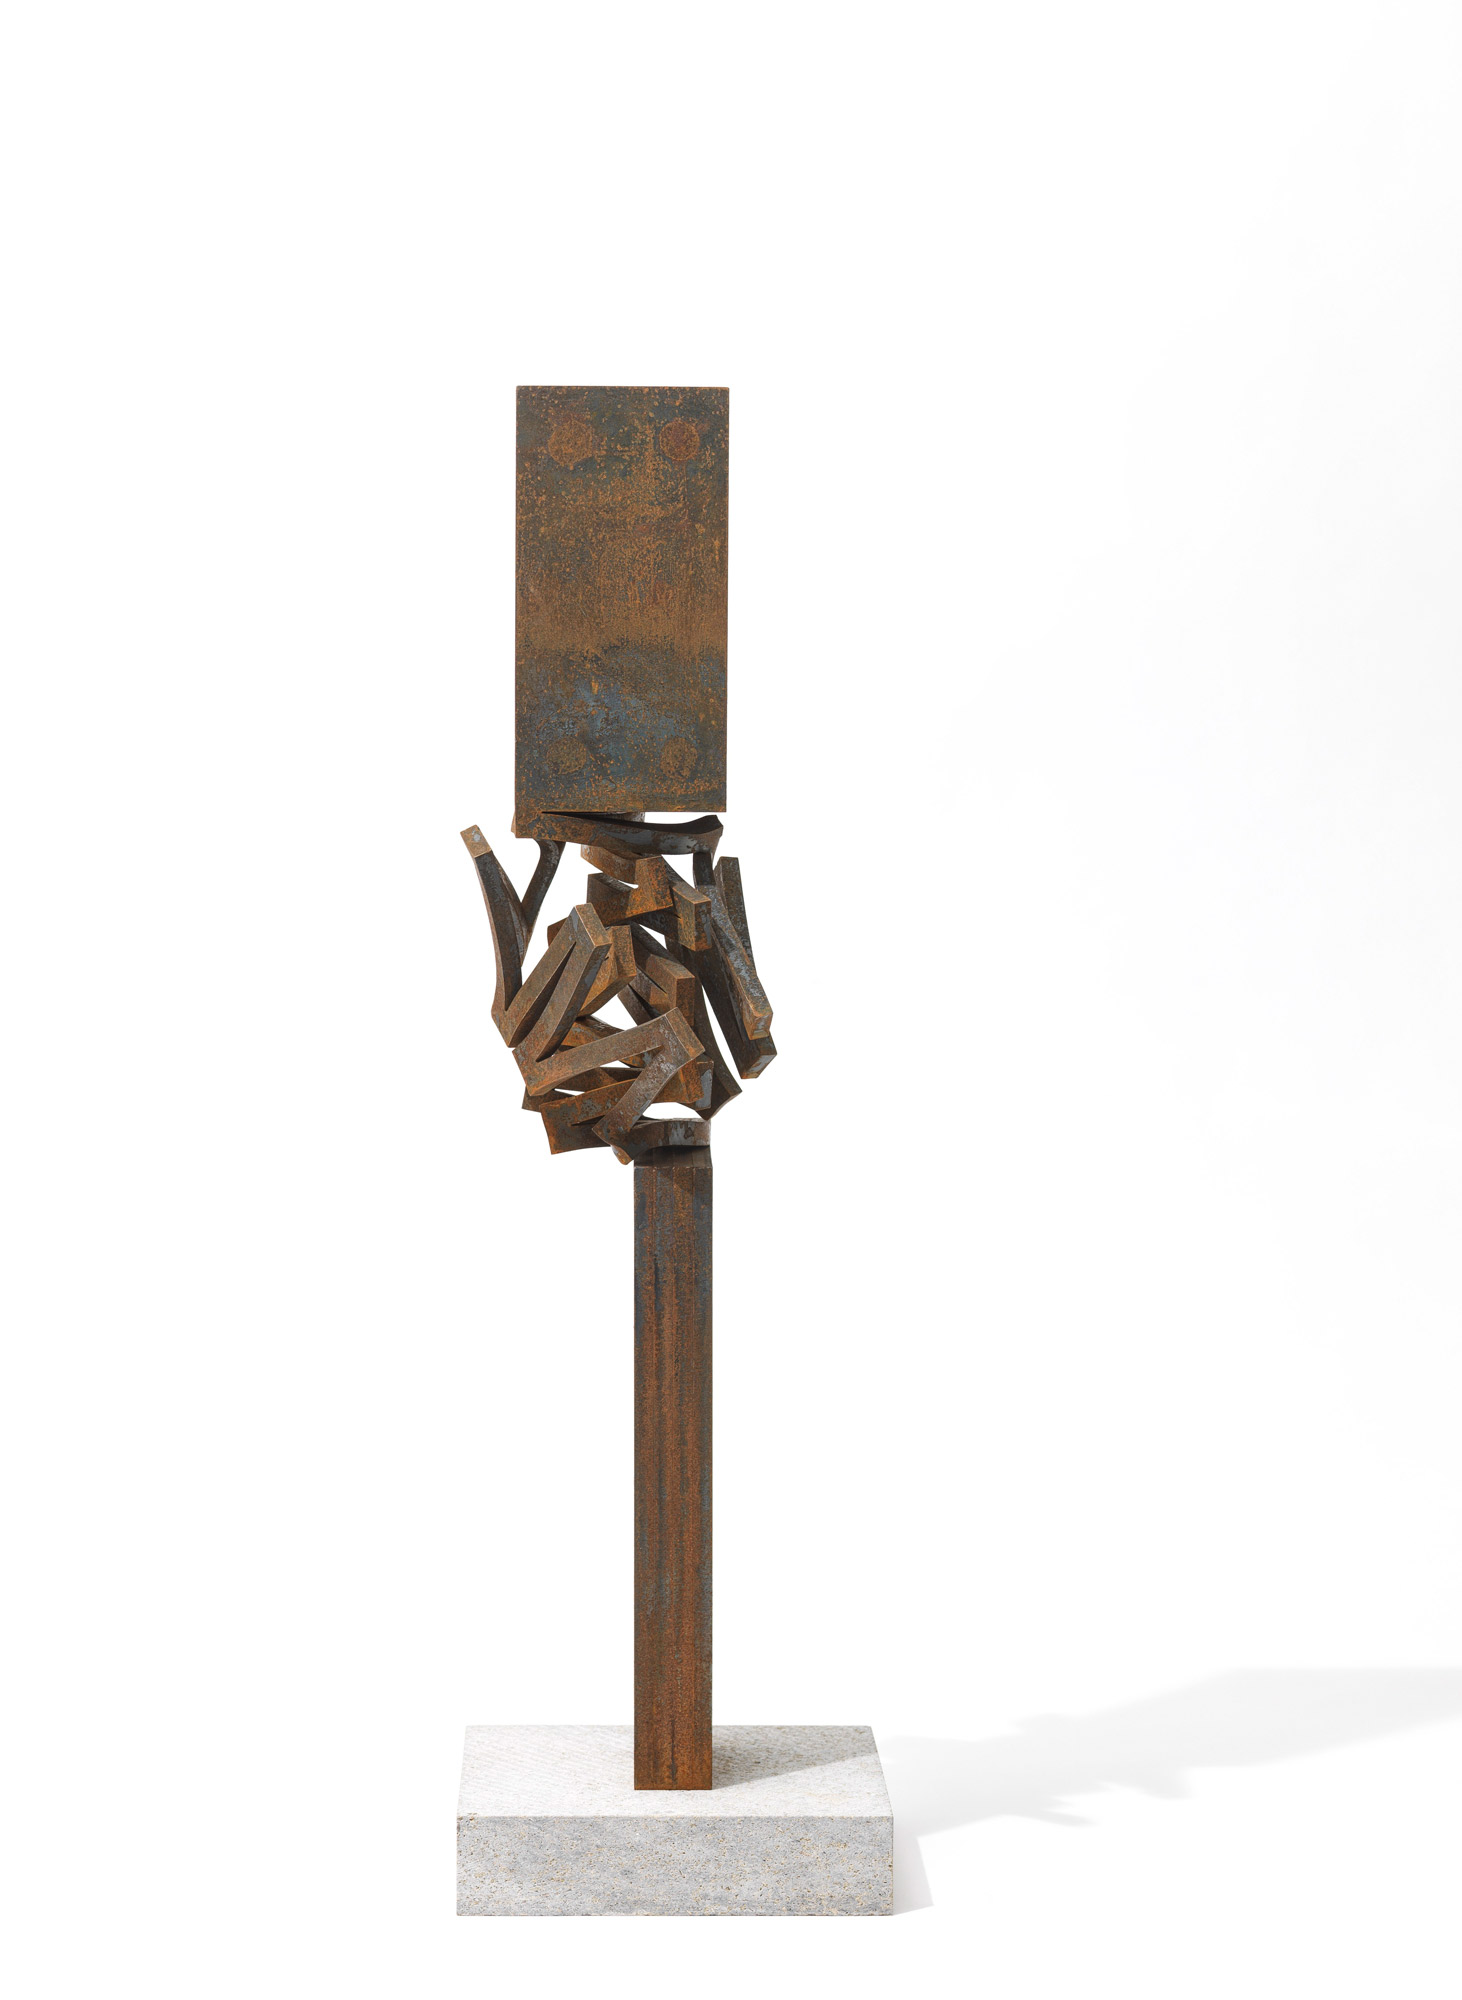 Skulptur "Drehung XX" (2021) (Unikat) by Thomas Röthel